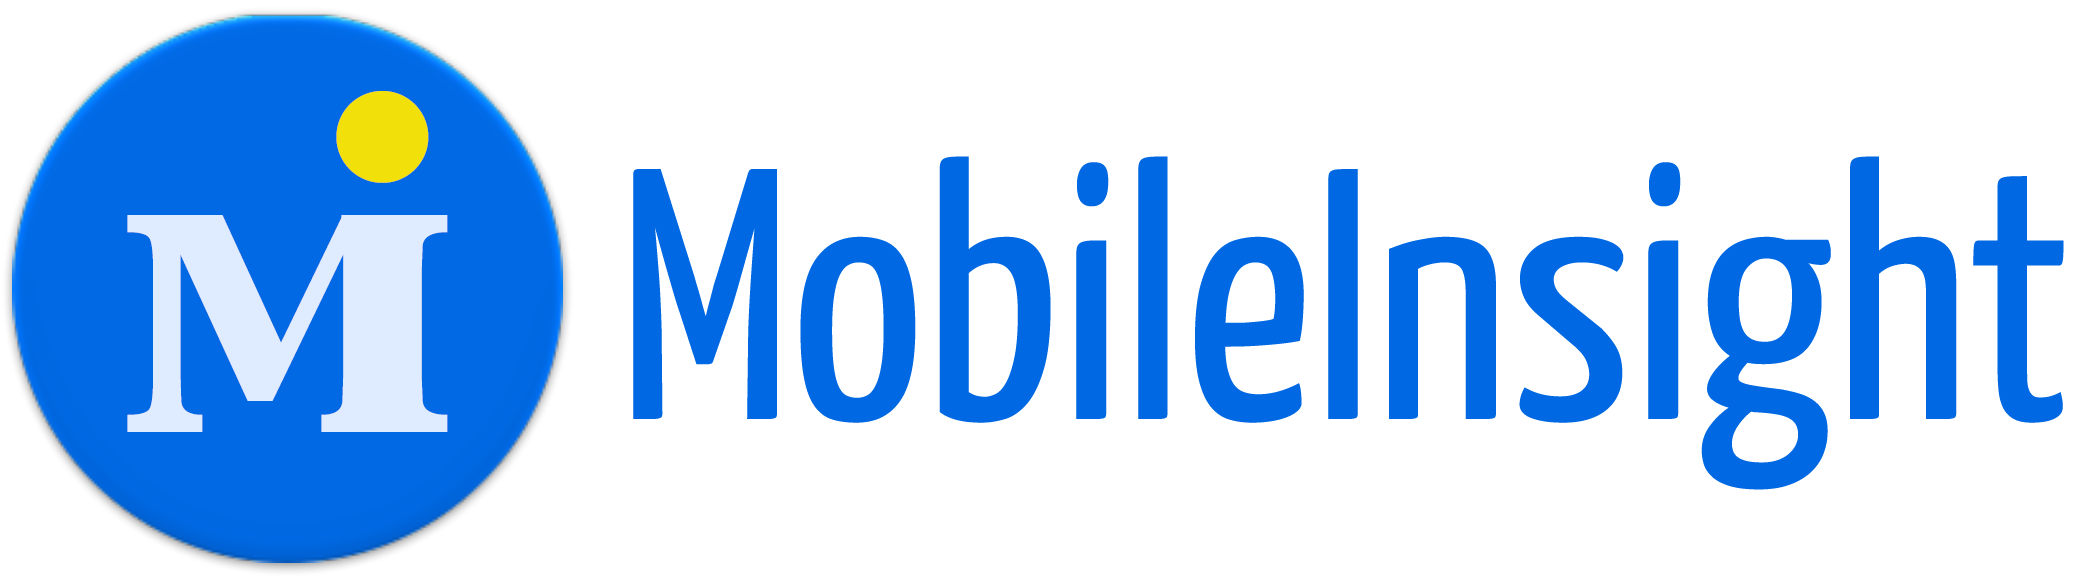 MobileInsight logo